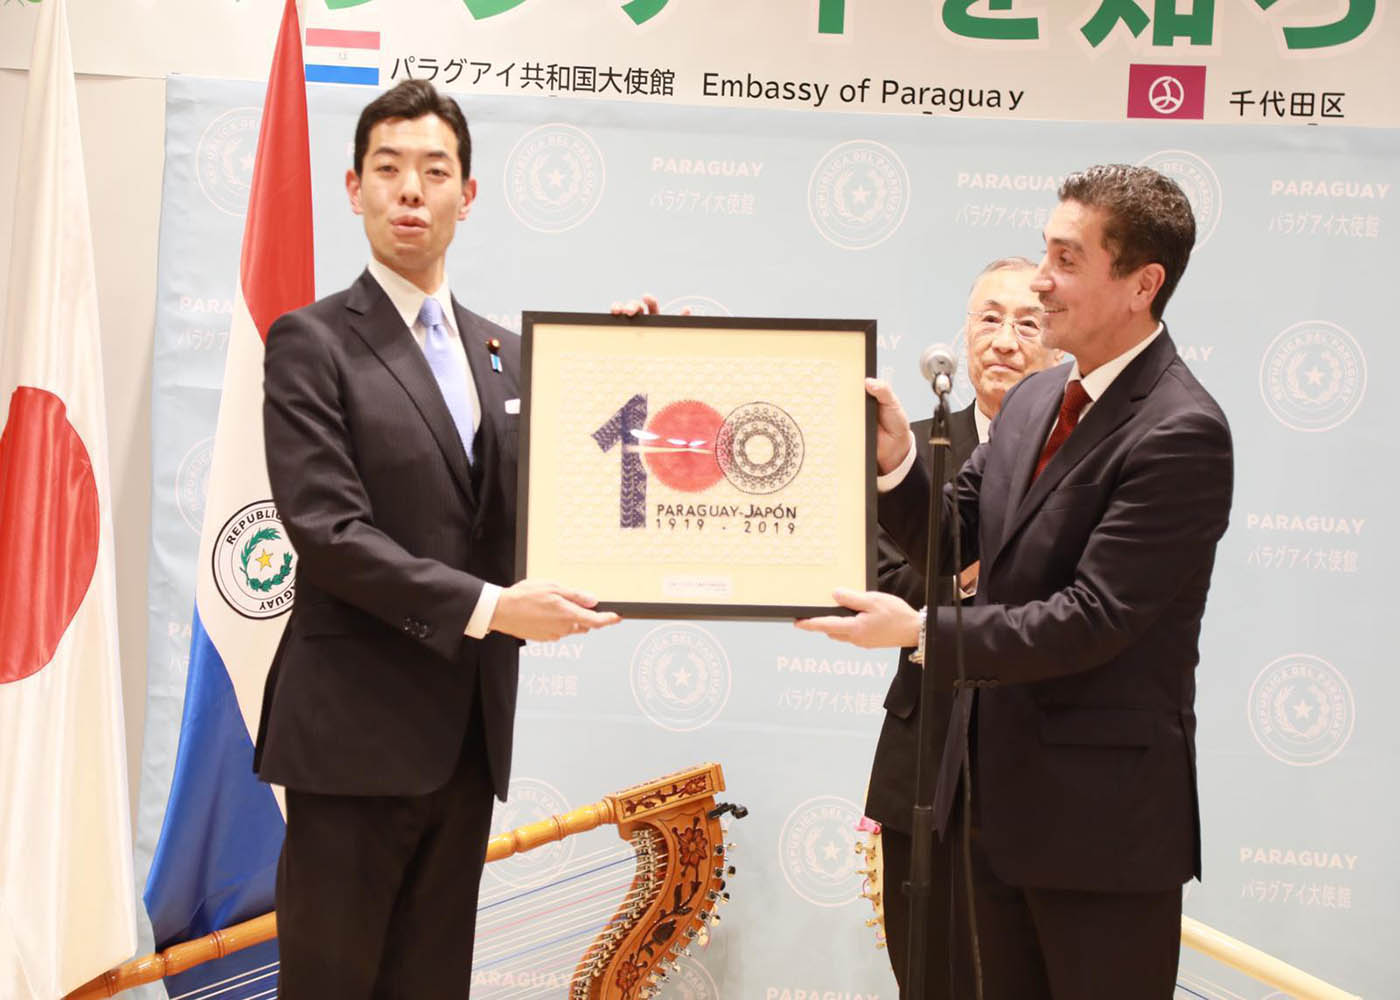 La Embajada del Paraguay en Japón realizó el lanzamiento de las celebraciones por los 100 años de relaciones diplomáticas